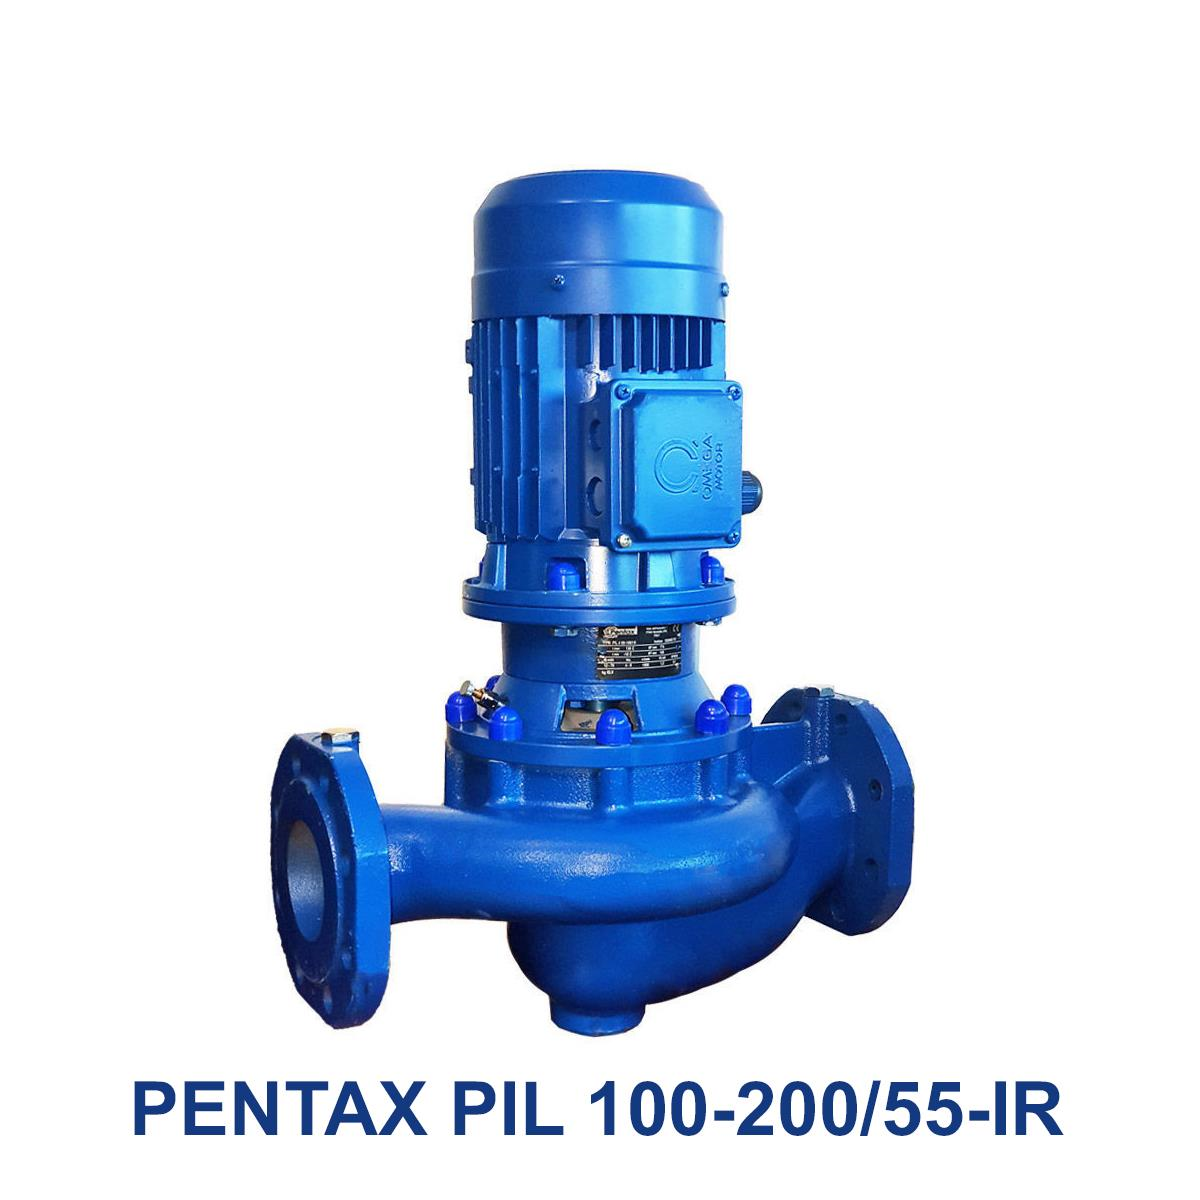 PENTAX-PIL-100-200-55-IR